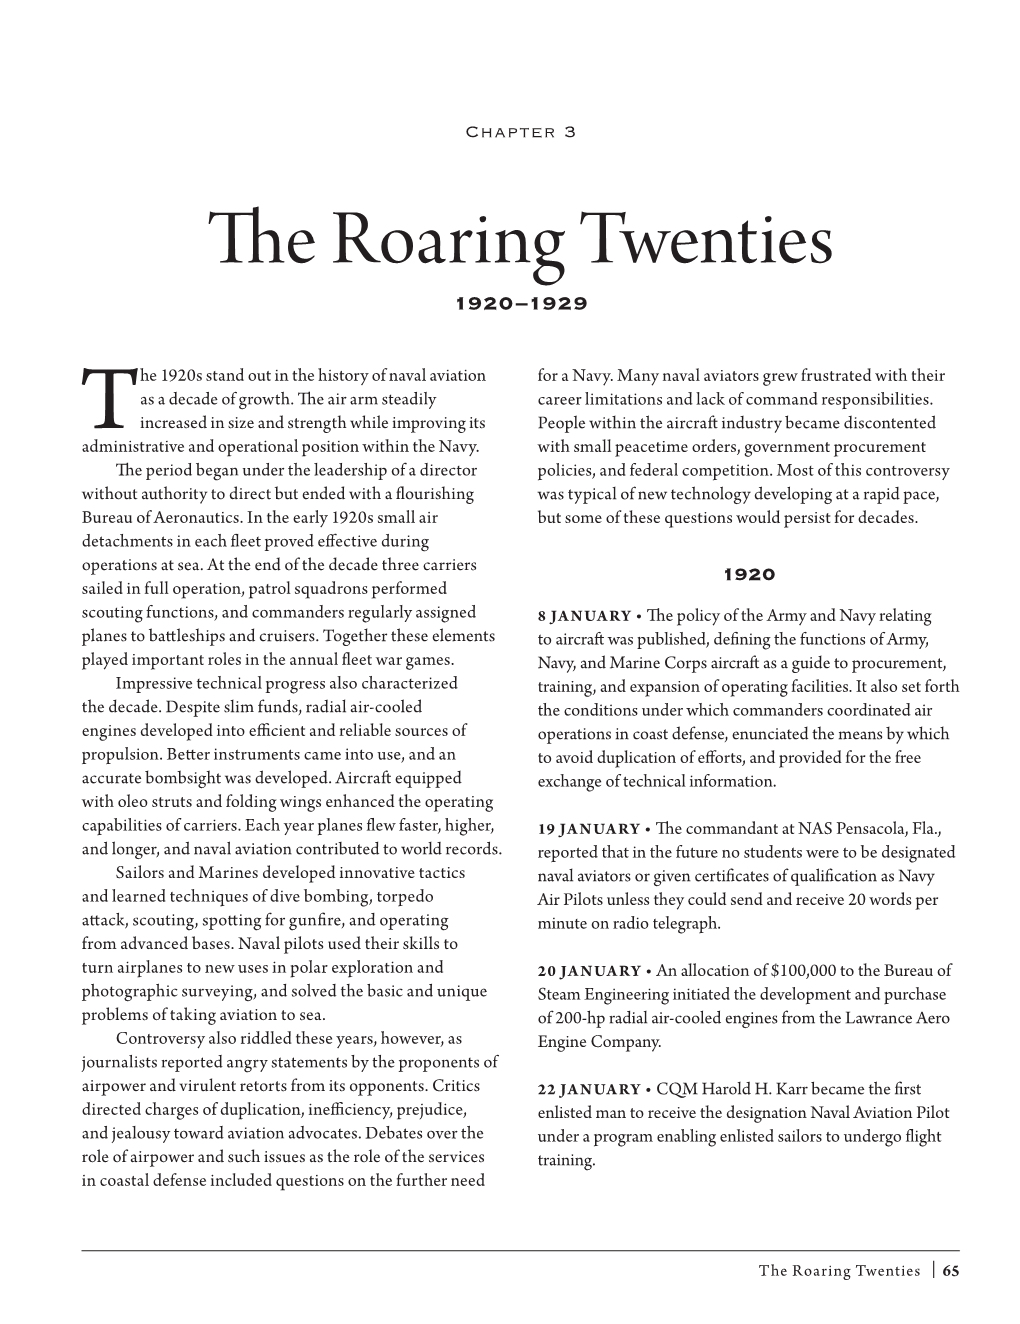 Chapter 3: the Roaring Twenties 1920–1929